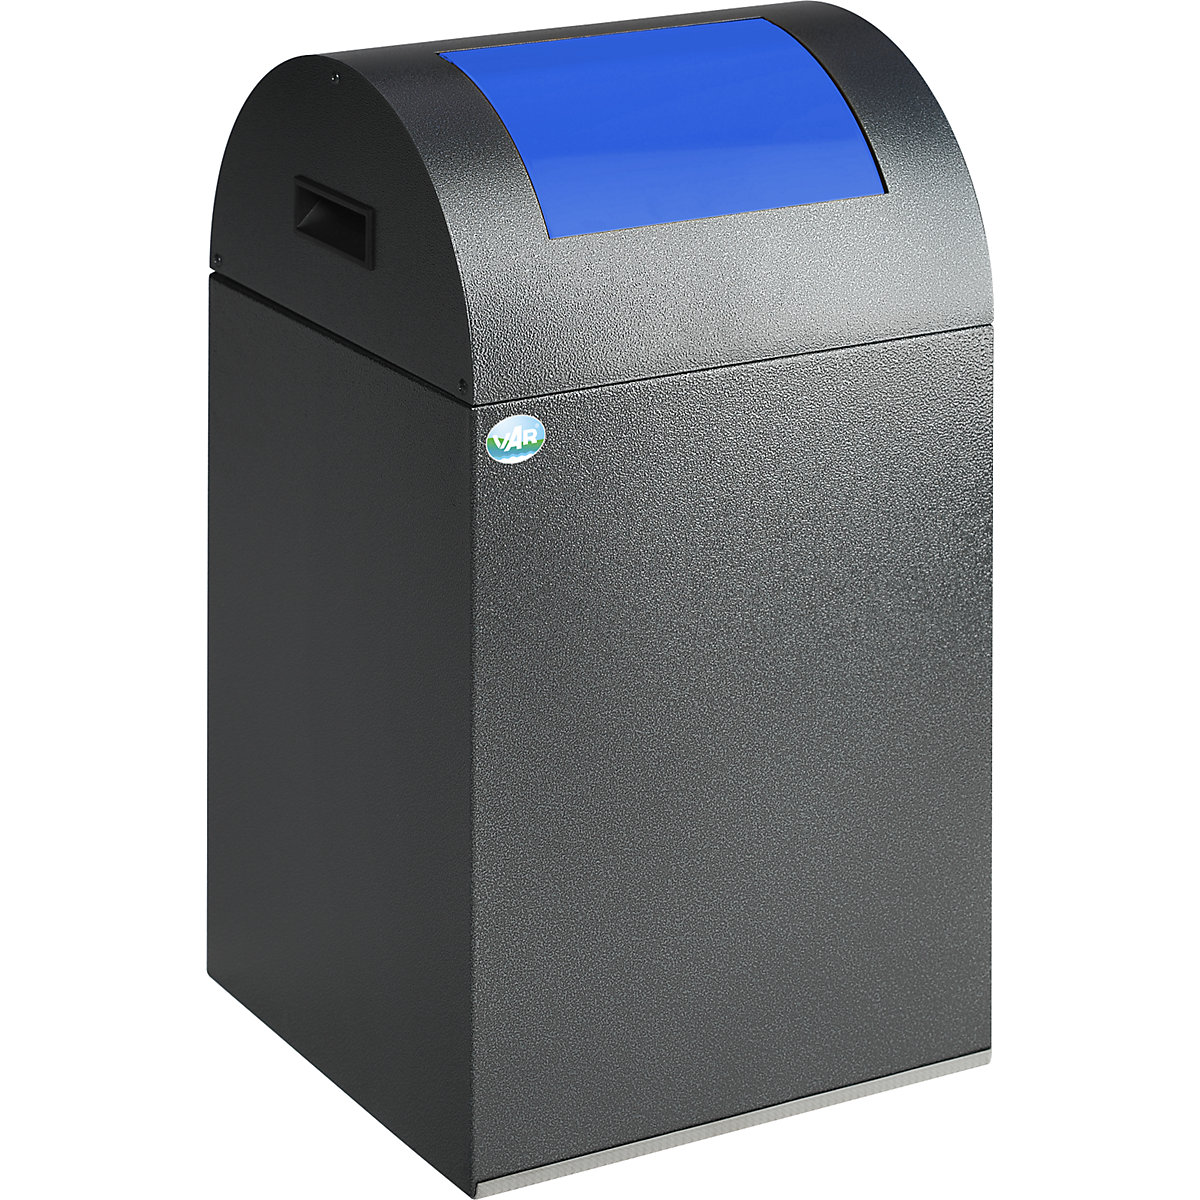 Coletor de materiais recicláveis autoextintor – VAR